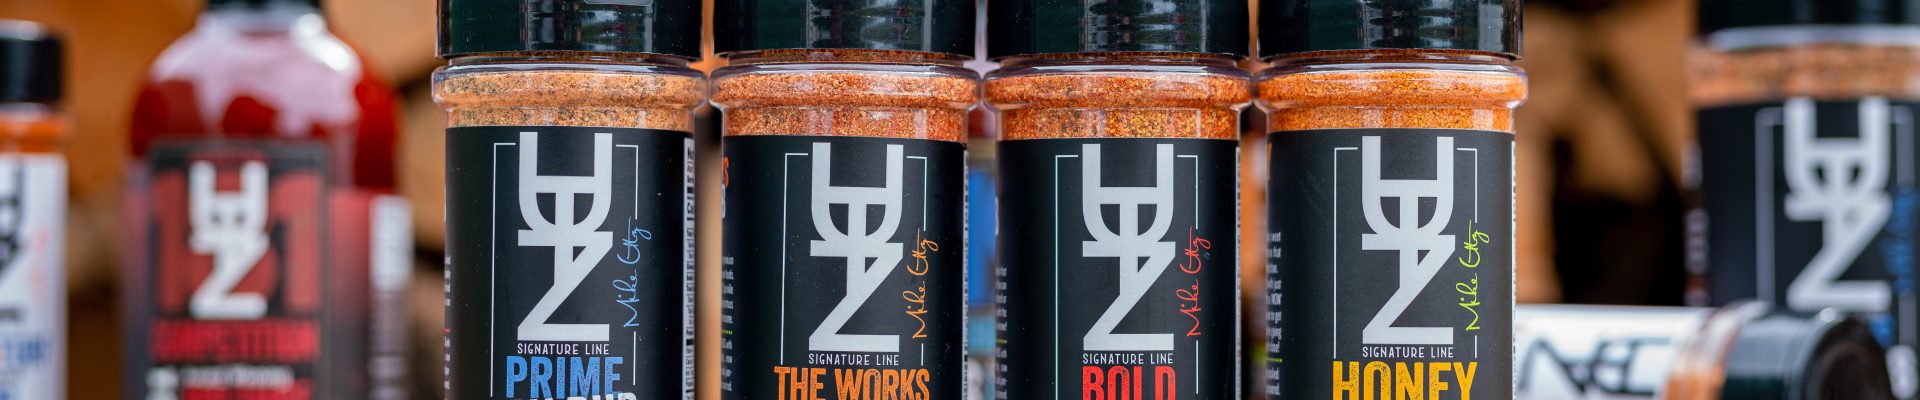 UTZ  BBQ Rubs Sampler Pack – Prime – Bold – The Works – Honey – Small Bottles